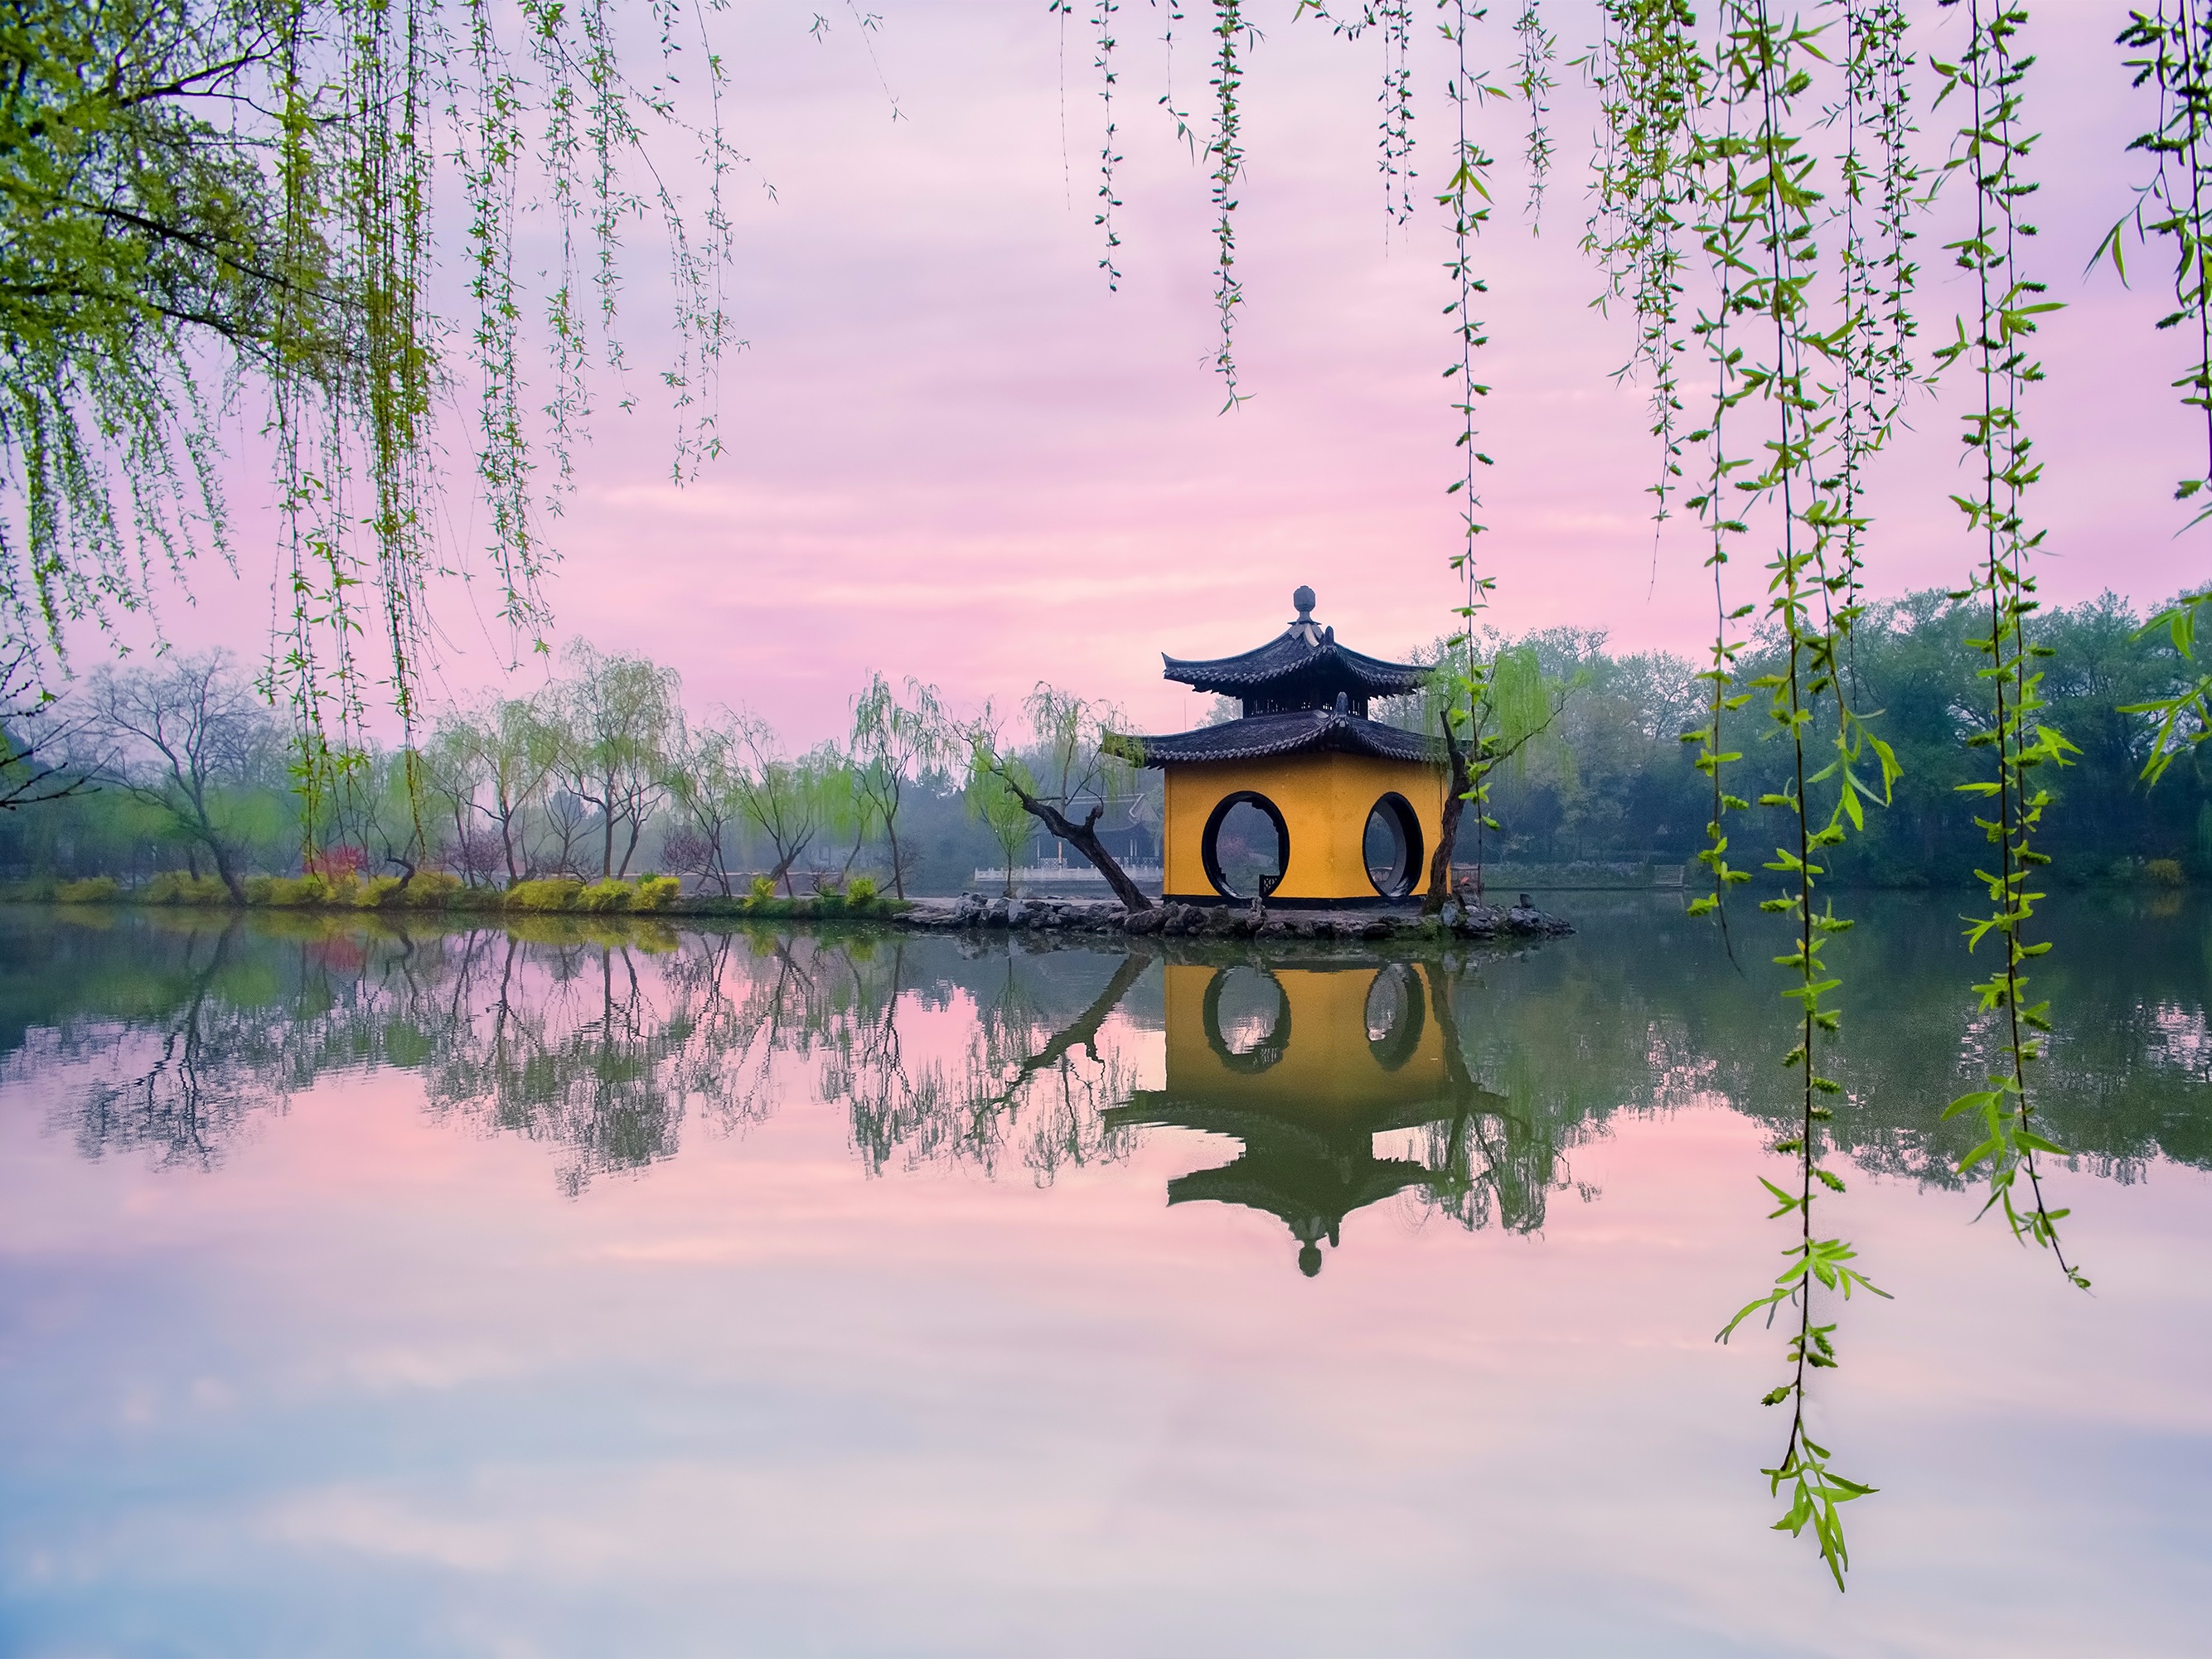 由杭州西湖文化风景的杨柳 库存图片. 图片 包括有 视图, 湖泊, 风景, 户外, 远景, 自然, 汉语 - 84708011